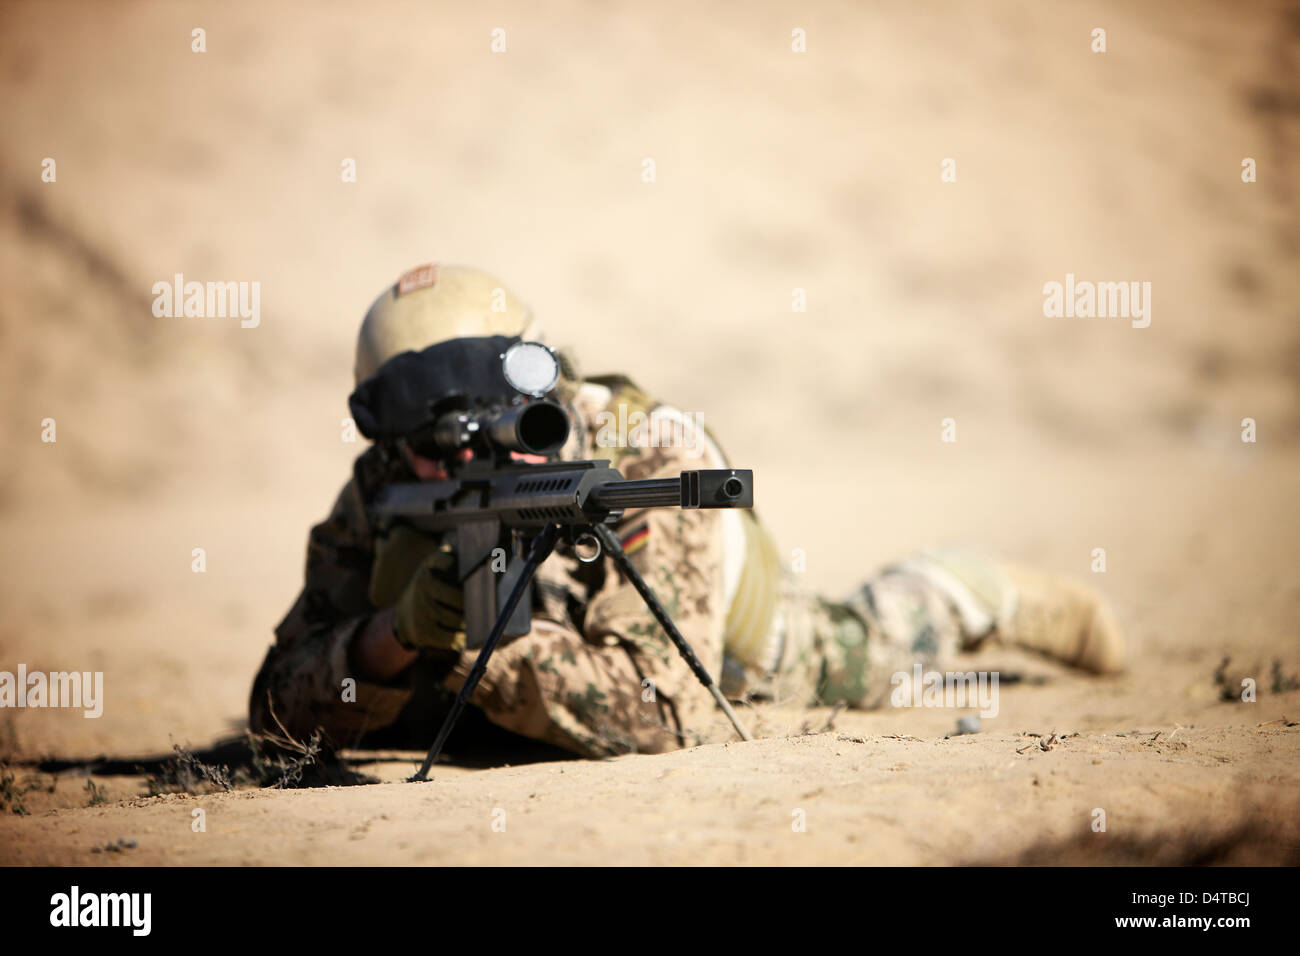 Un soldato tedesco luoghi in un Barrett M82A1 fucile su una gamma di Kunduz, Afghanistan. Foto Stock